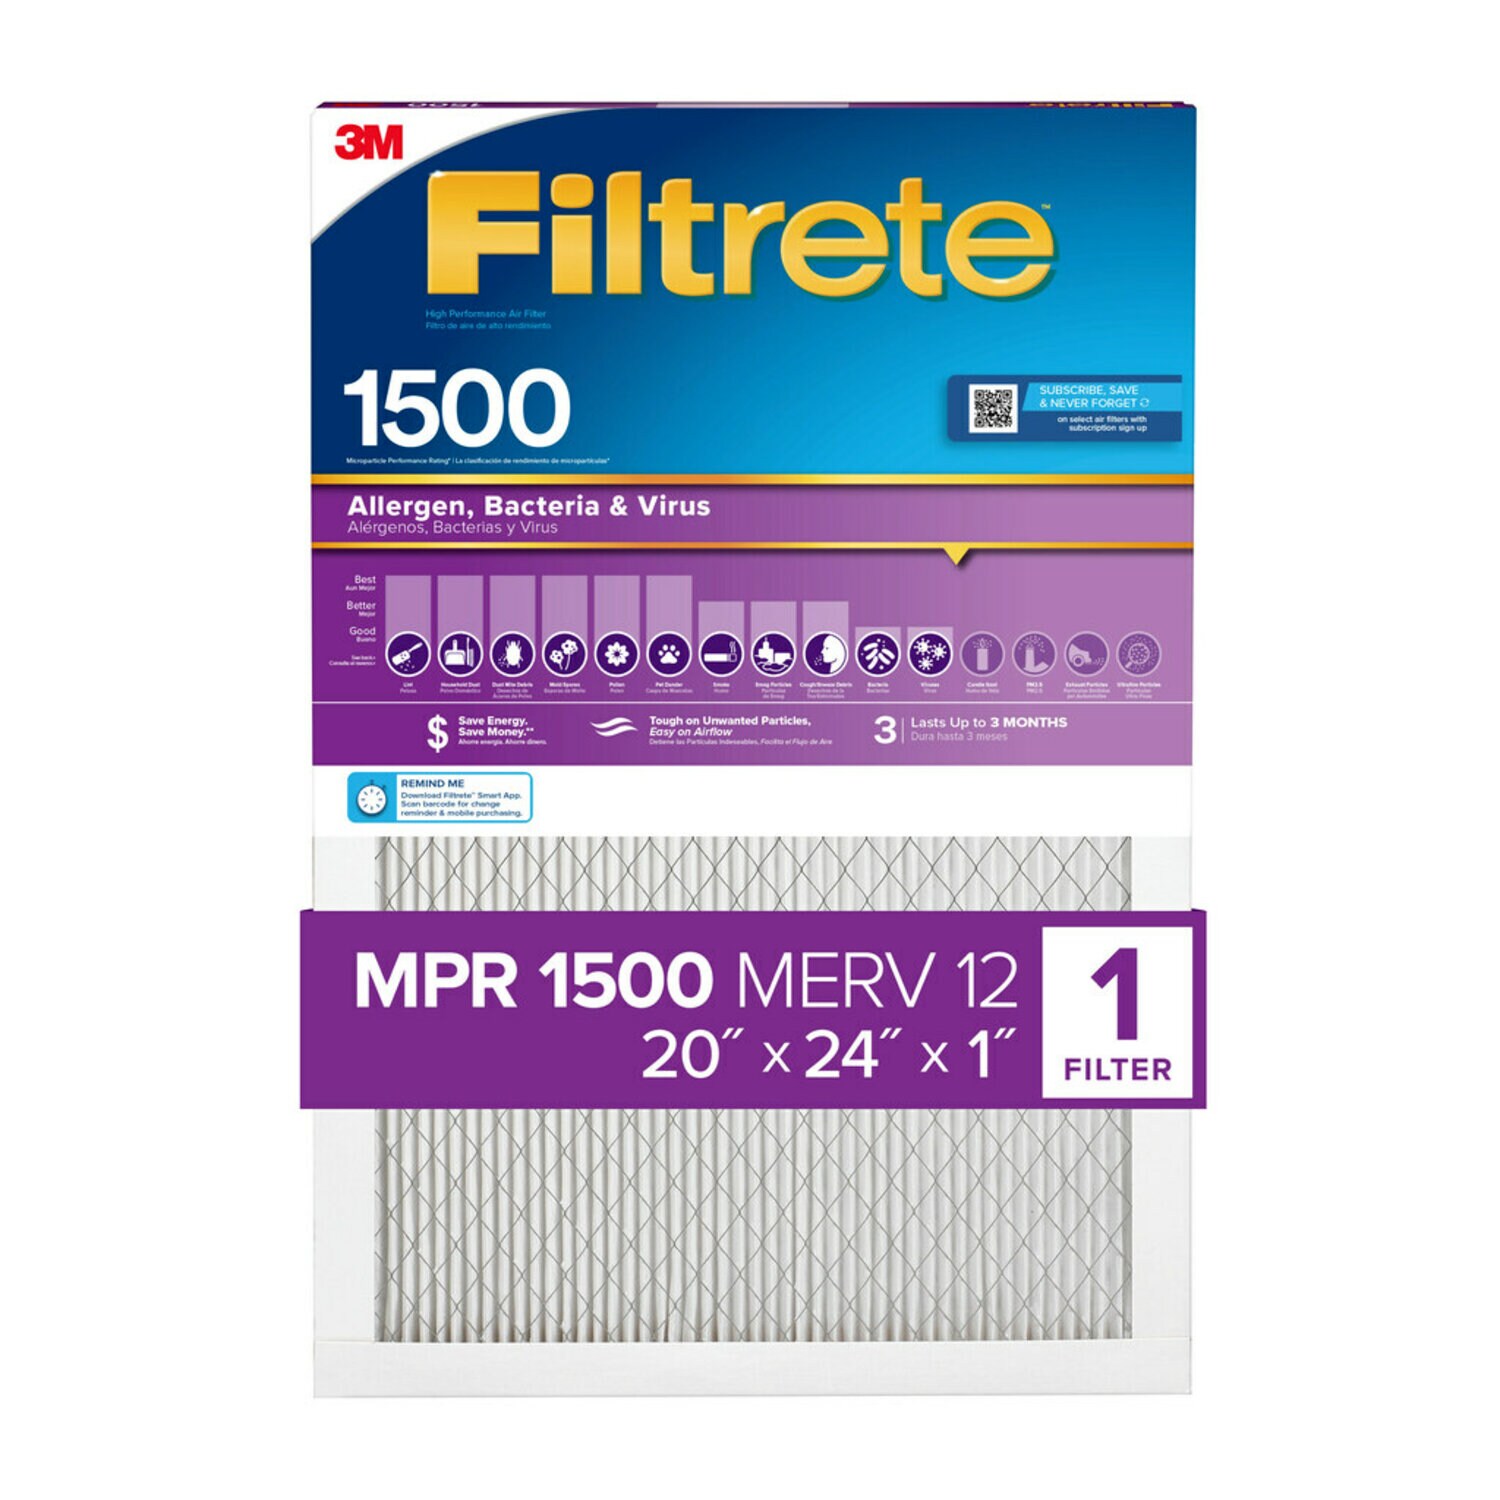 7100264970 - Filtrete High Performance Air Filter 1500 MPR 2026DC-4, 20 in x 24 in x 1 in (50.8 cm x 60.9 cm x 2.5 cm)